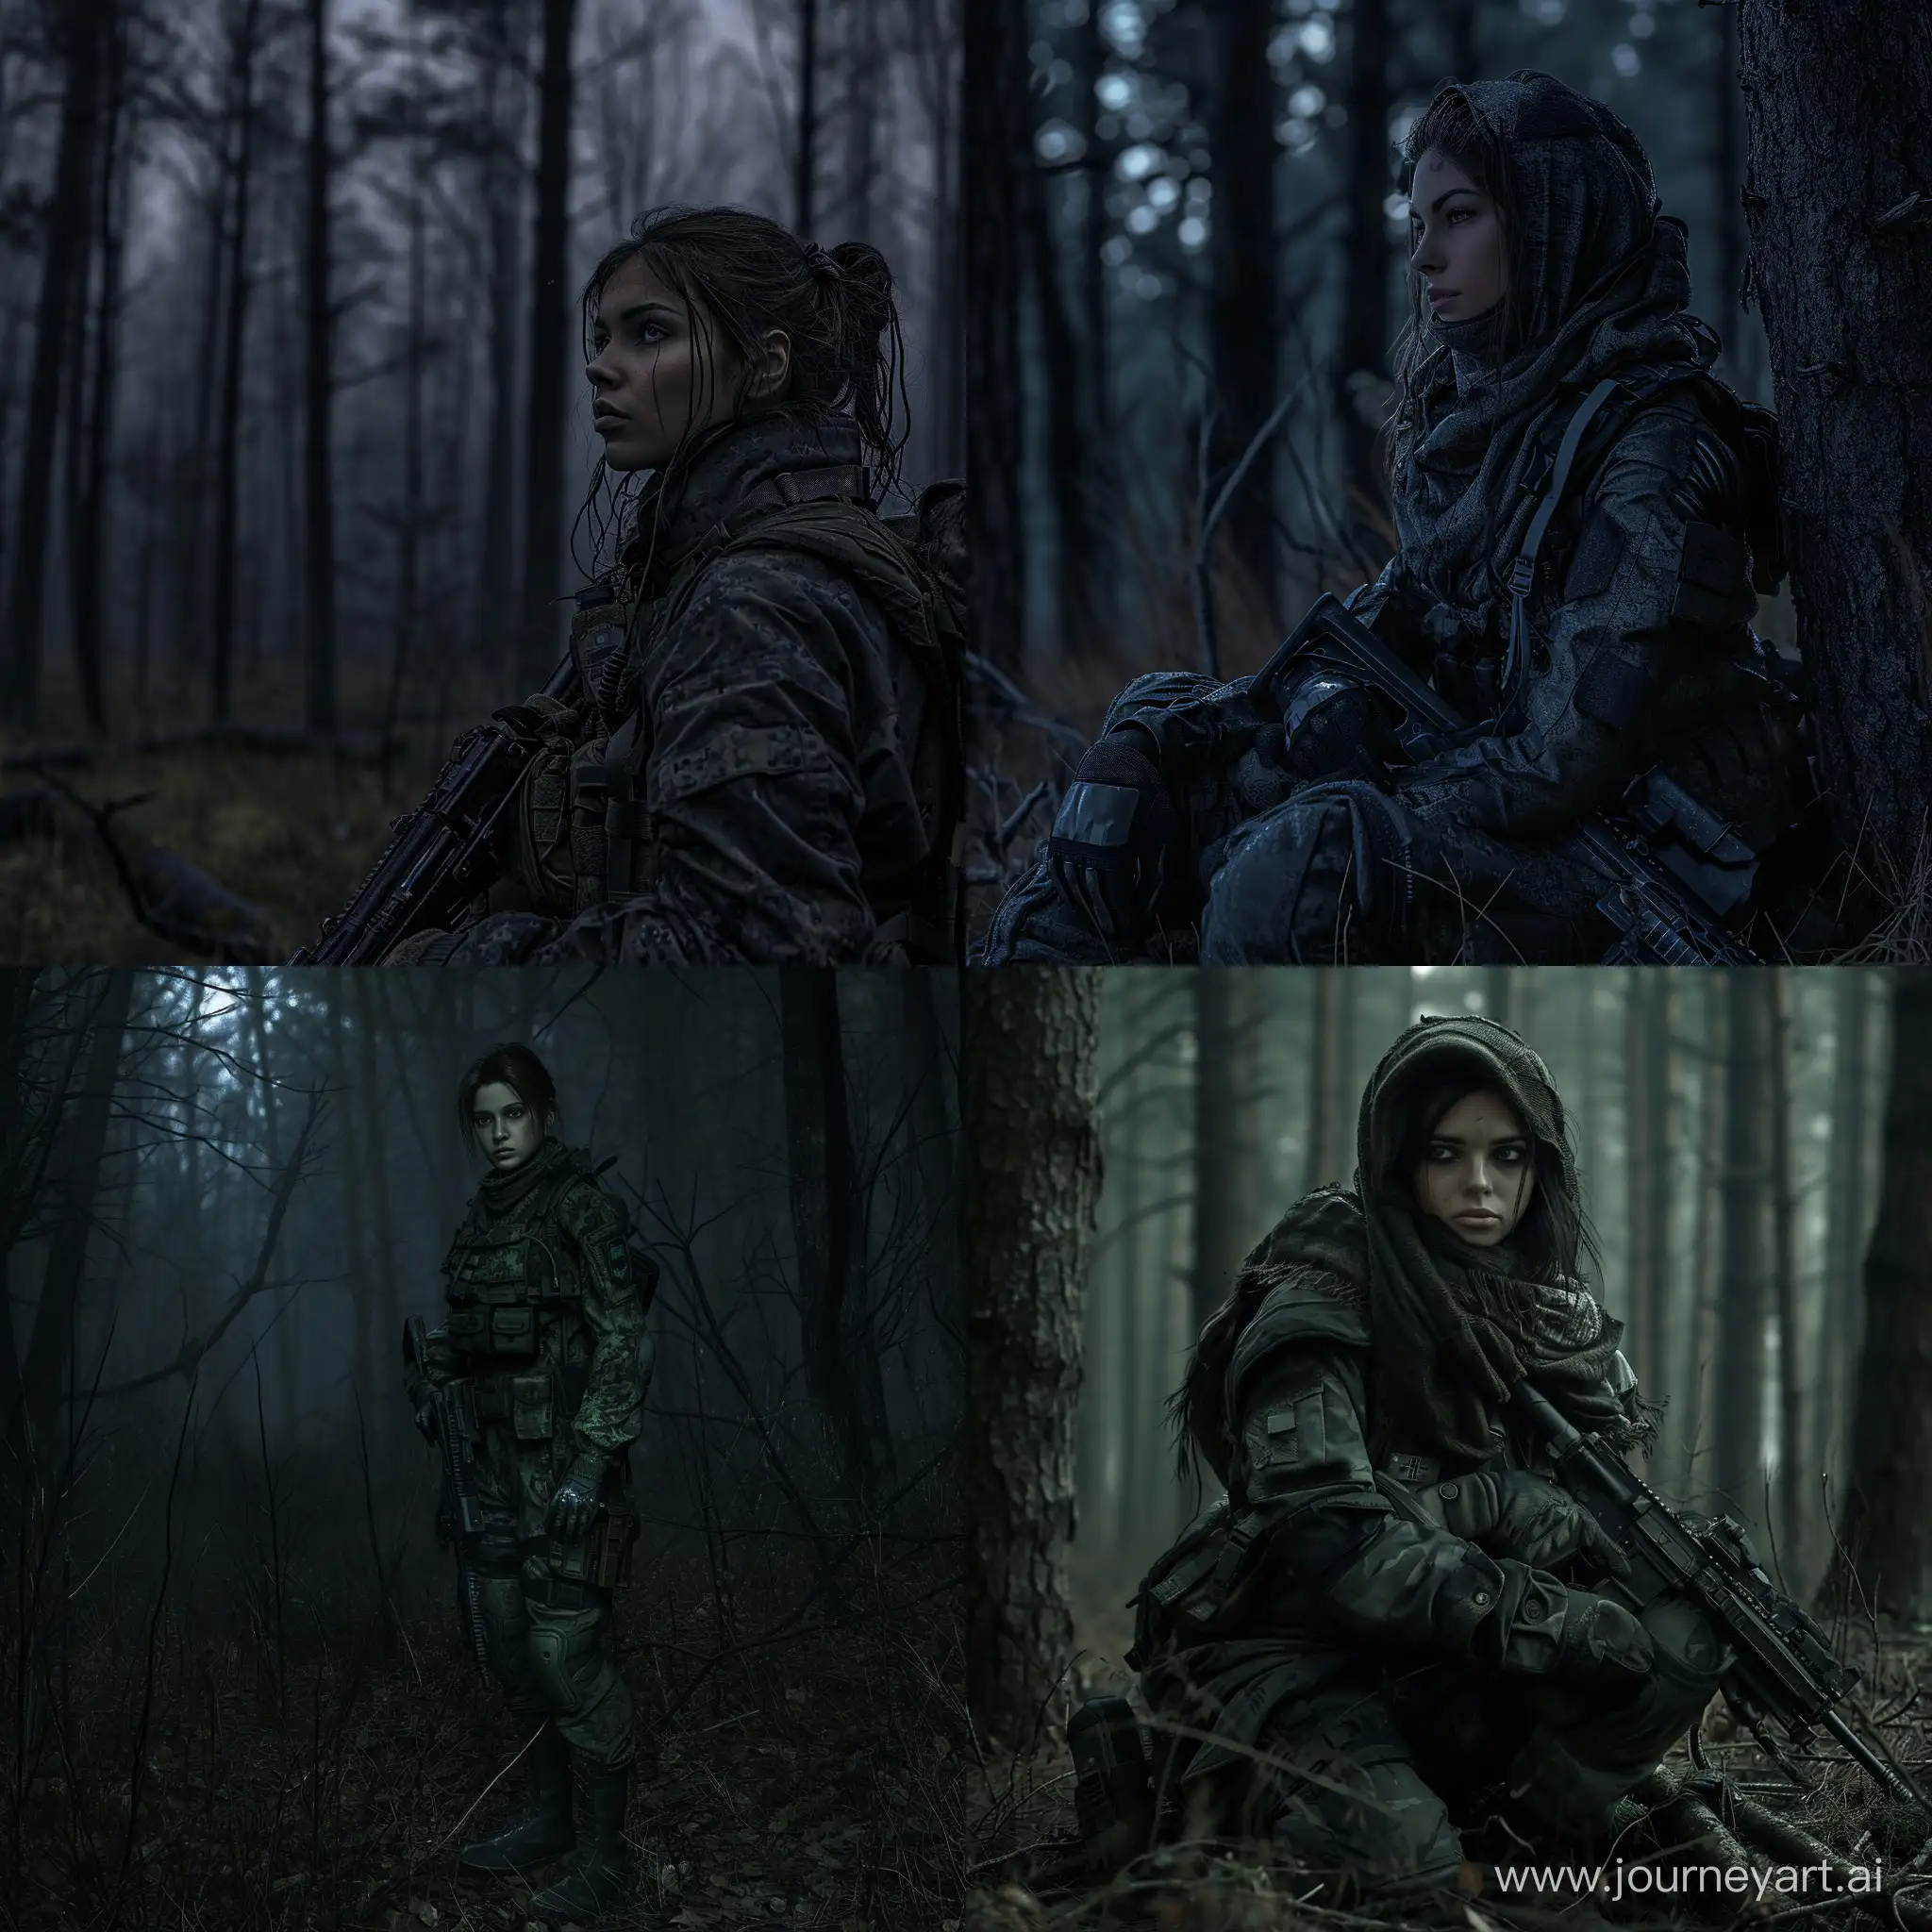 Sheva-Alomar-as-Mercenary-in-Dark-Tactical-Gear-Amidst-Dead-Trees-in-STALKER